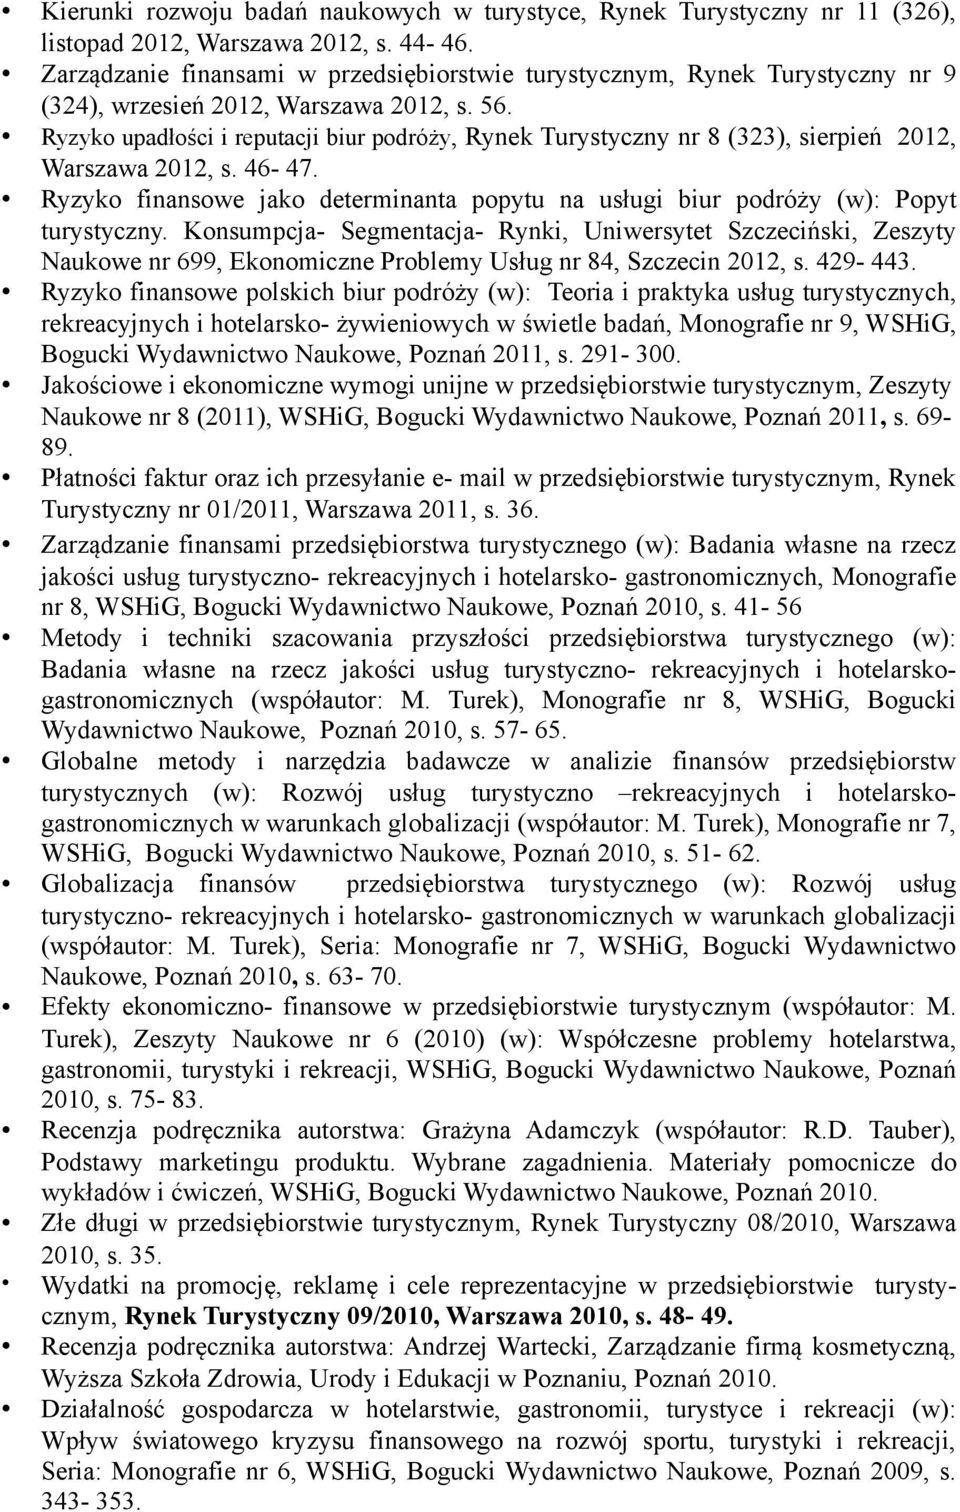 Ryzyko upadłości i reputacji biur podróży, Rynek Turystyczny nr 8 (323), sierpień 2012, Warszawa 2012, s. 46-47.